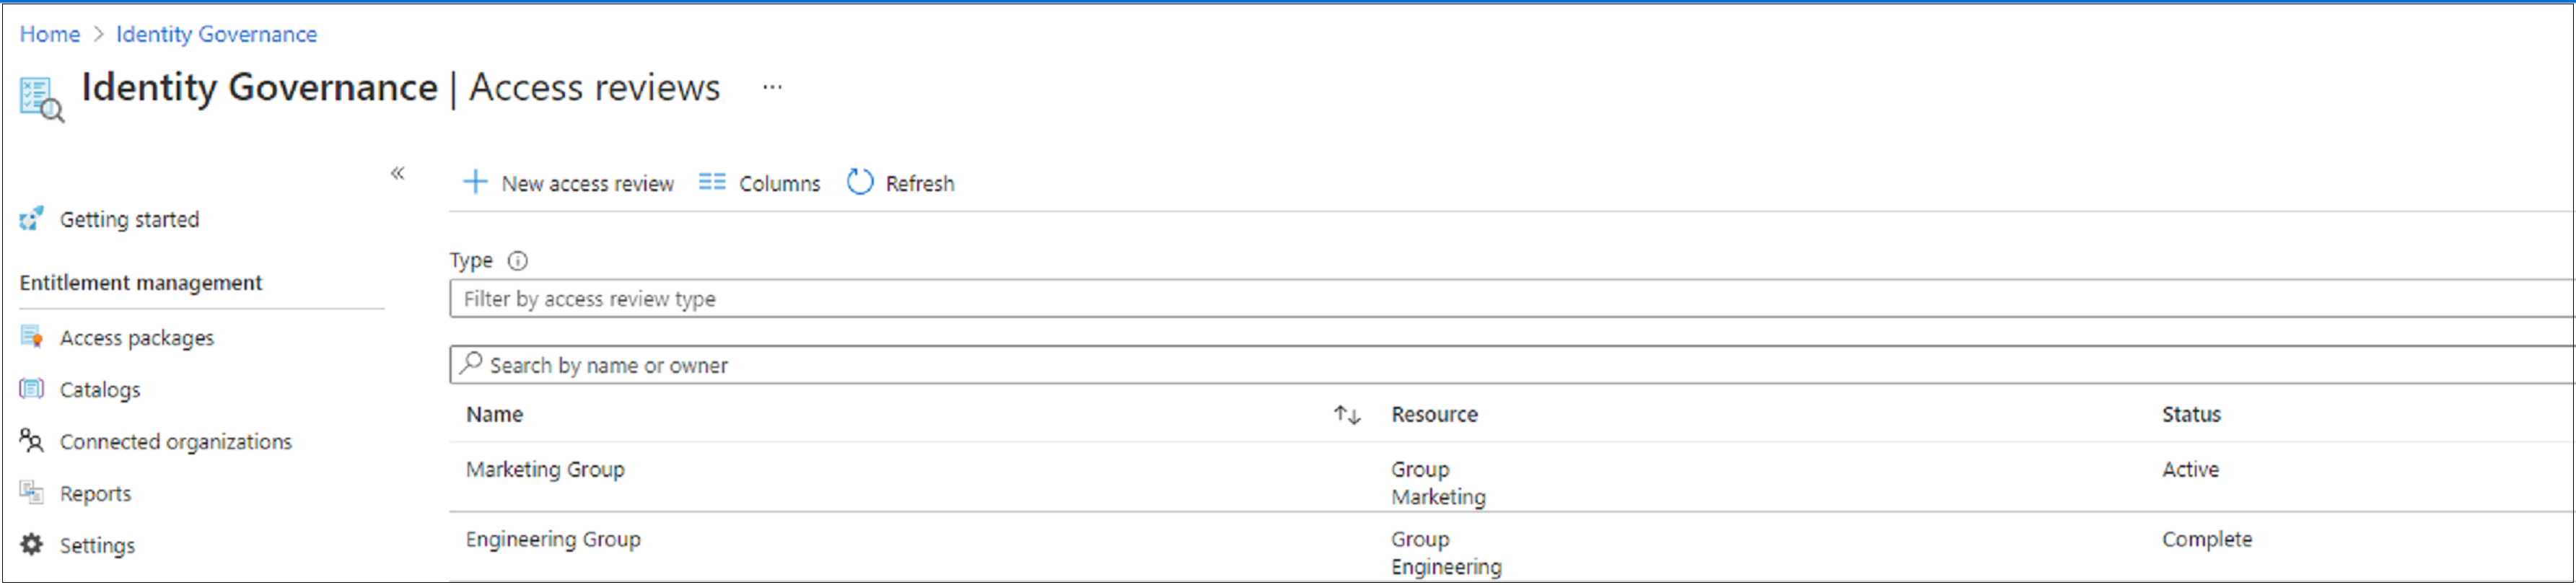 Captura de tela que mostra uma lista de avaliações de acesso e seu status.